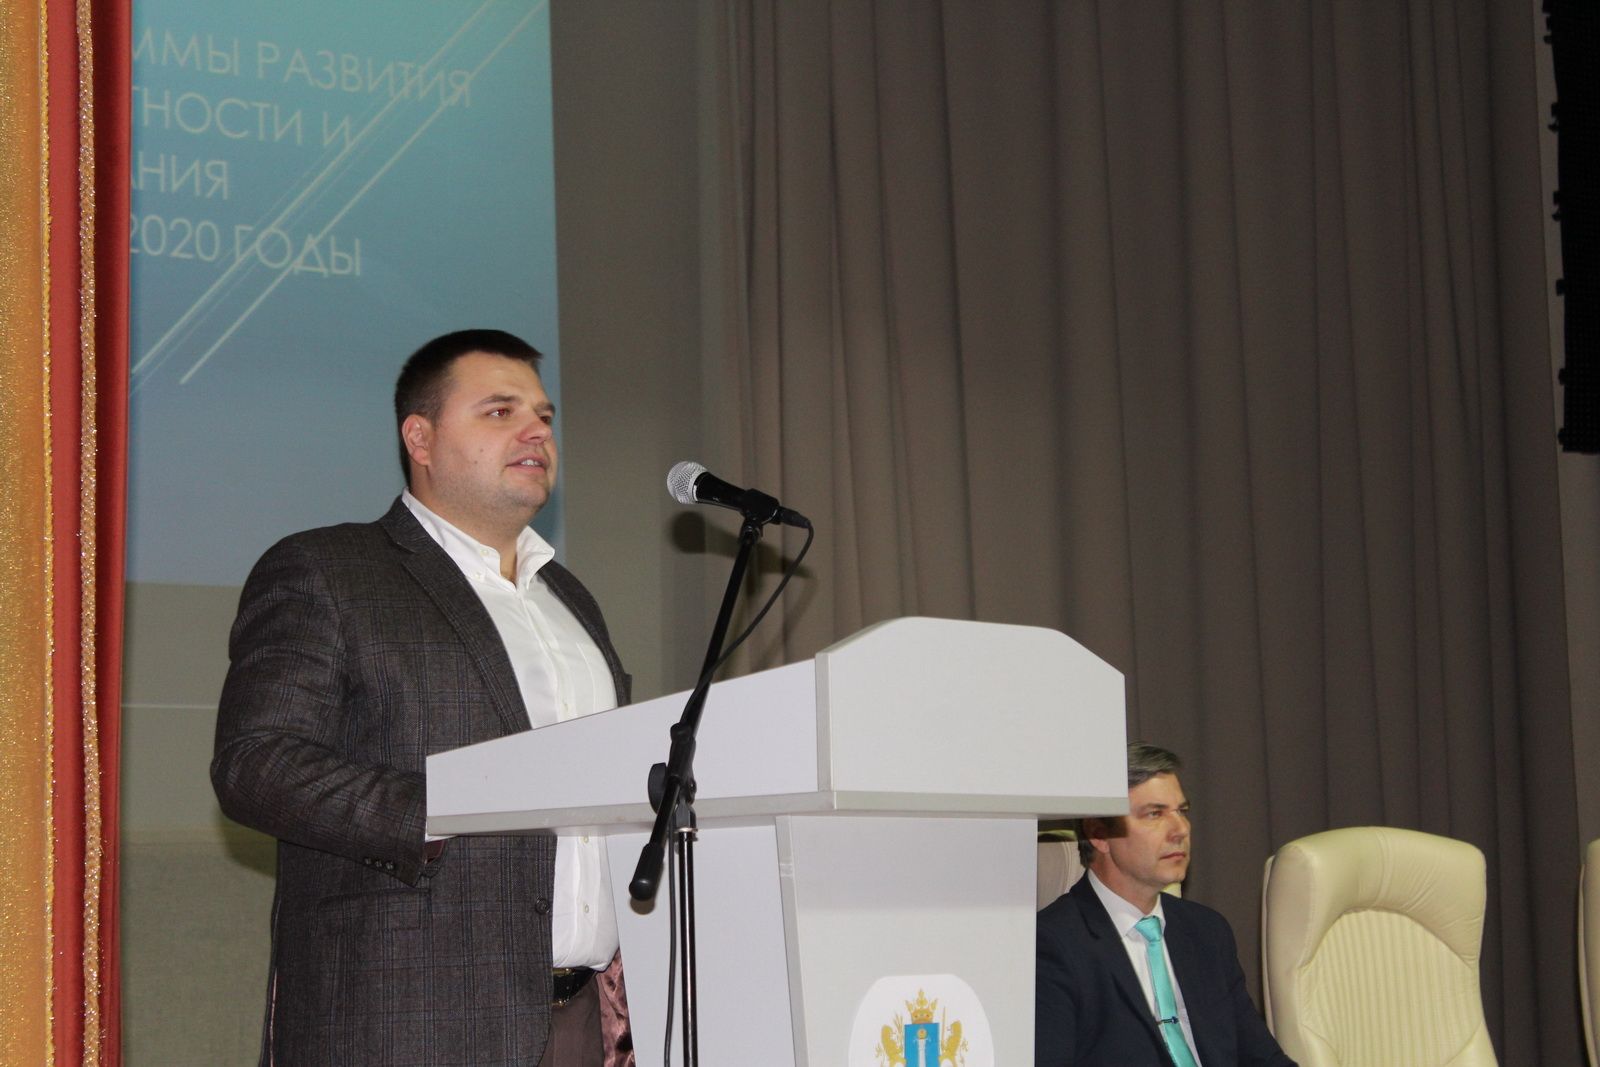 «Документ с интересной историей»: в Ульяновске обсудили правовое просвещение и открыли новый правовой Центр